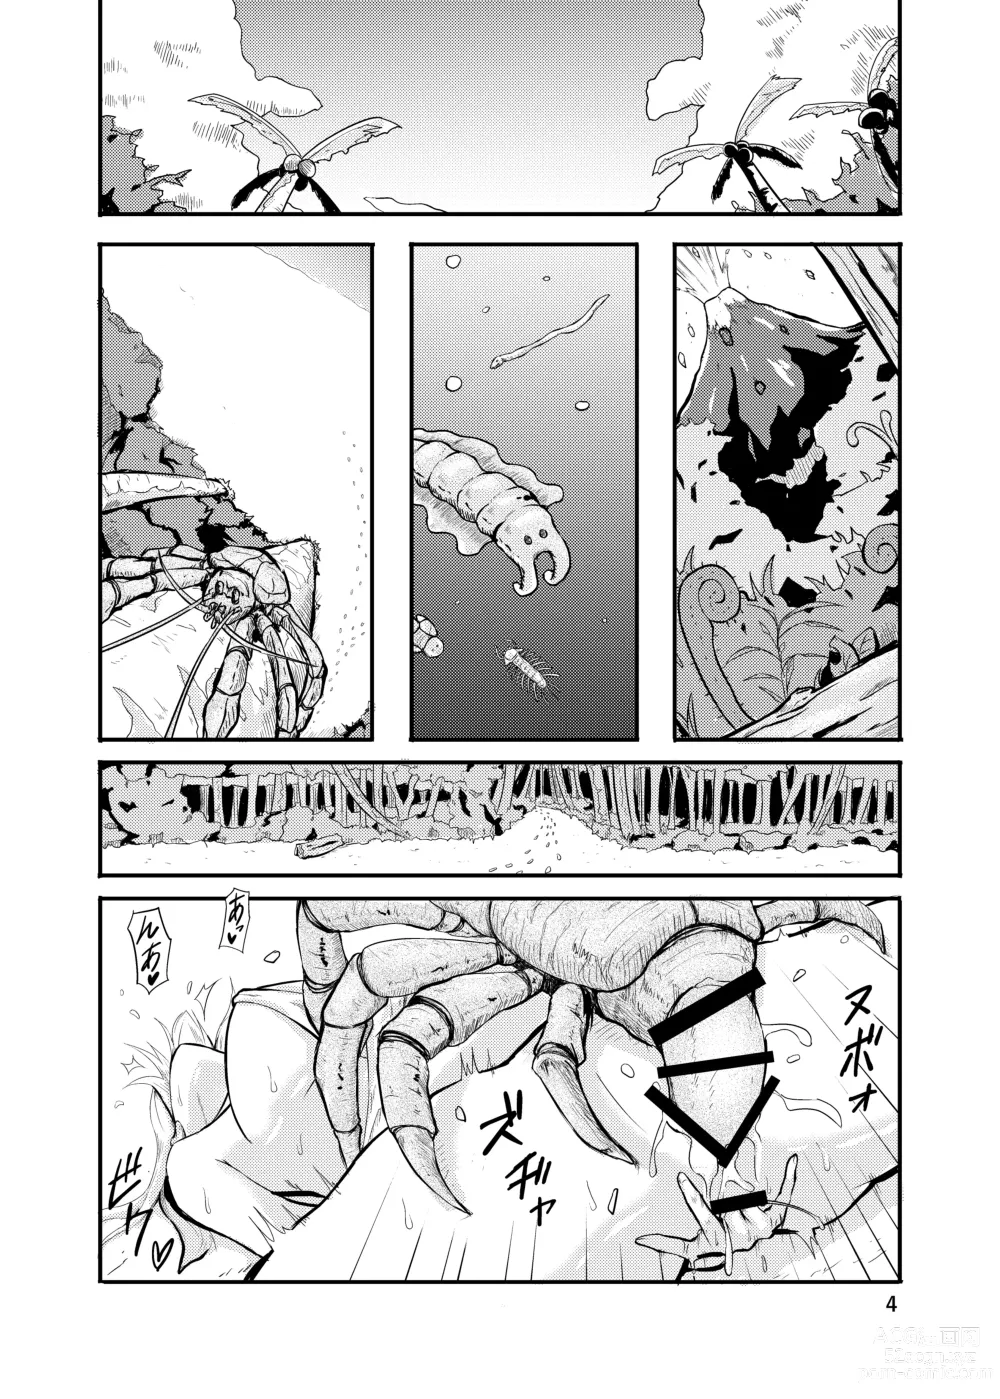 Page 4 of doujinshi 800-man Hiki no Kami-sama.